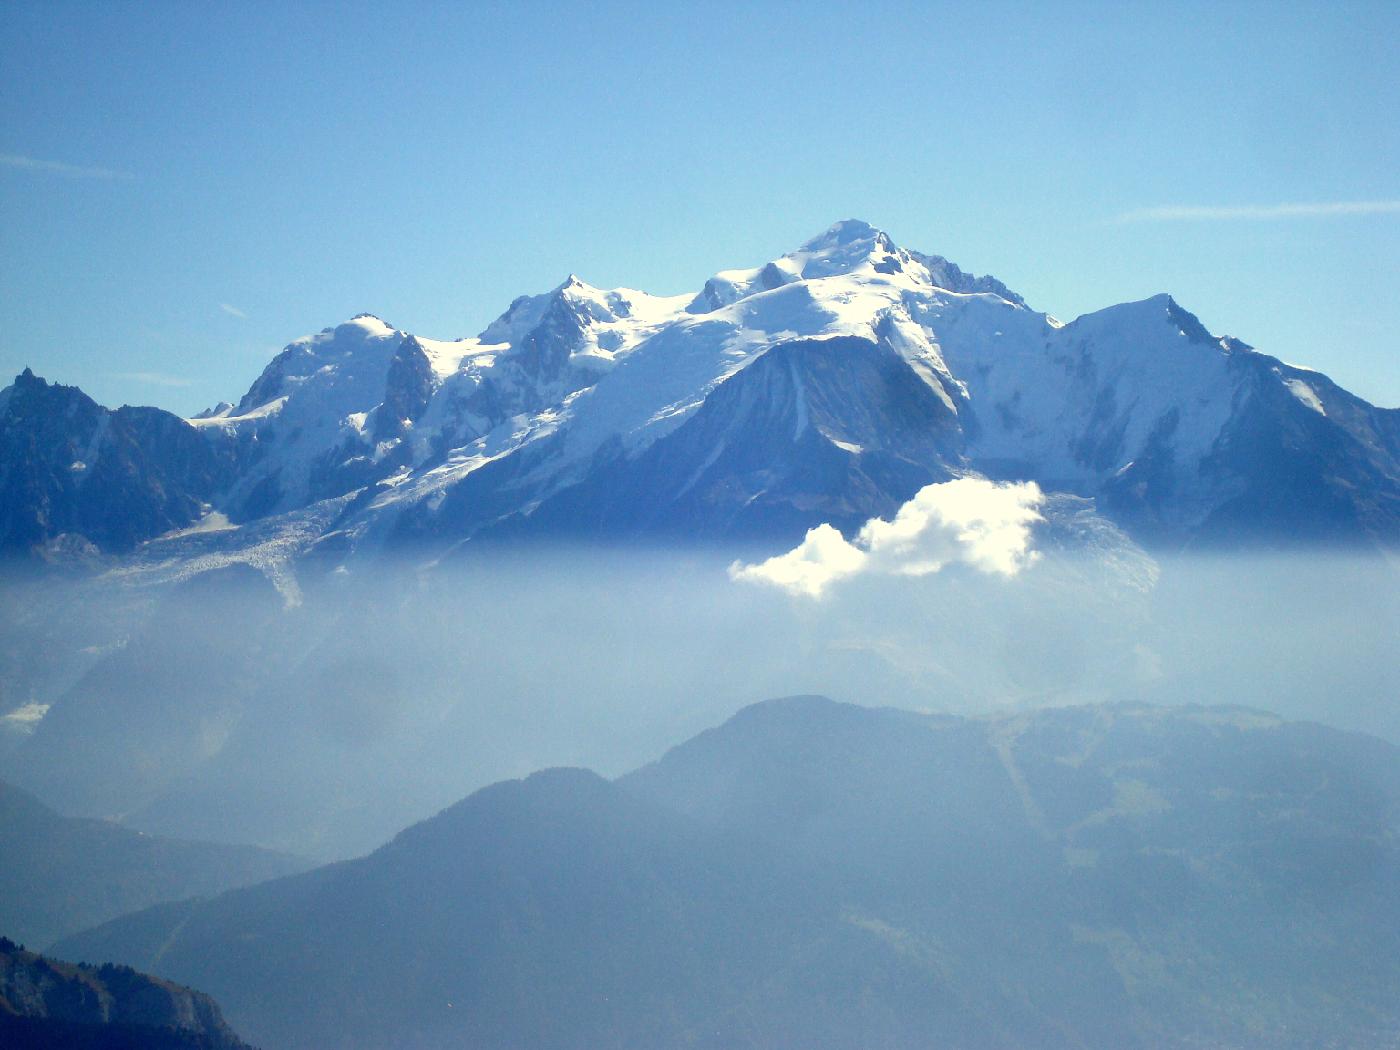 DSC02934.jpg - Le Mont-Blanc au-dessus de la brume